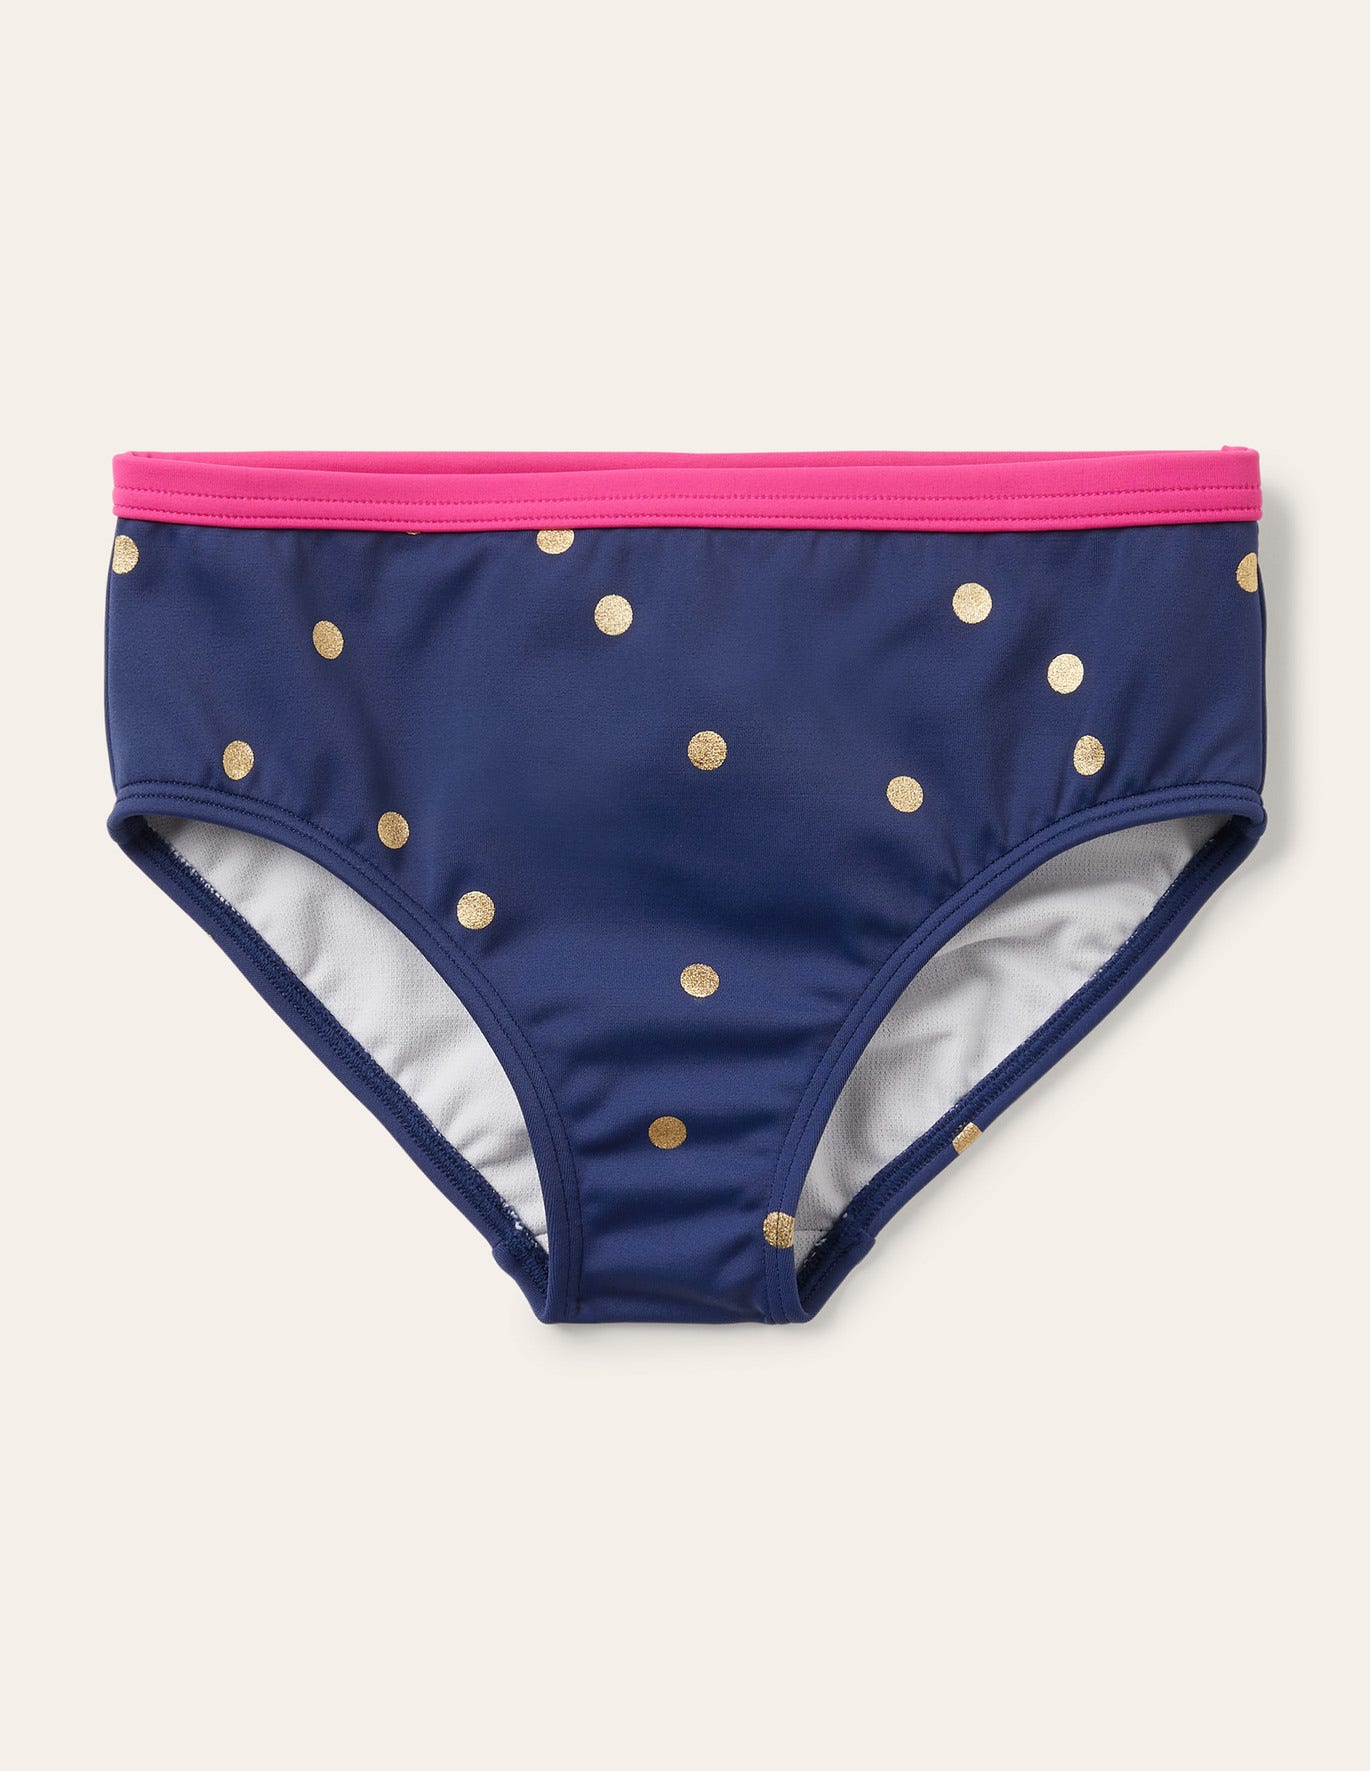 Boden Patterned Bikini Bottoms - Harmony Blue Gold Spot